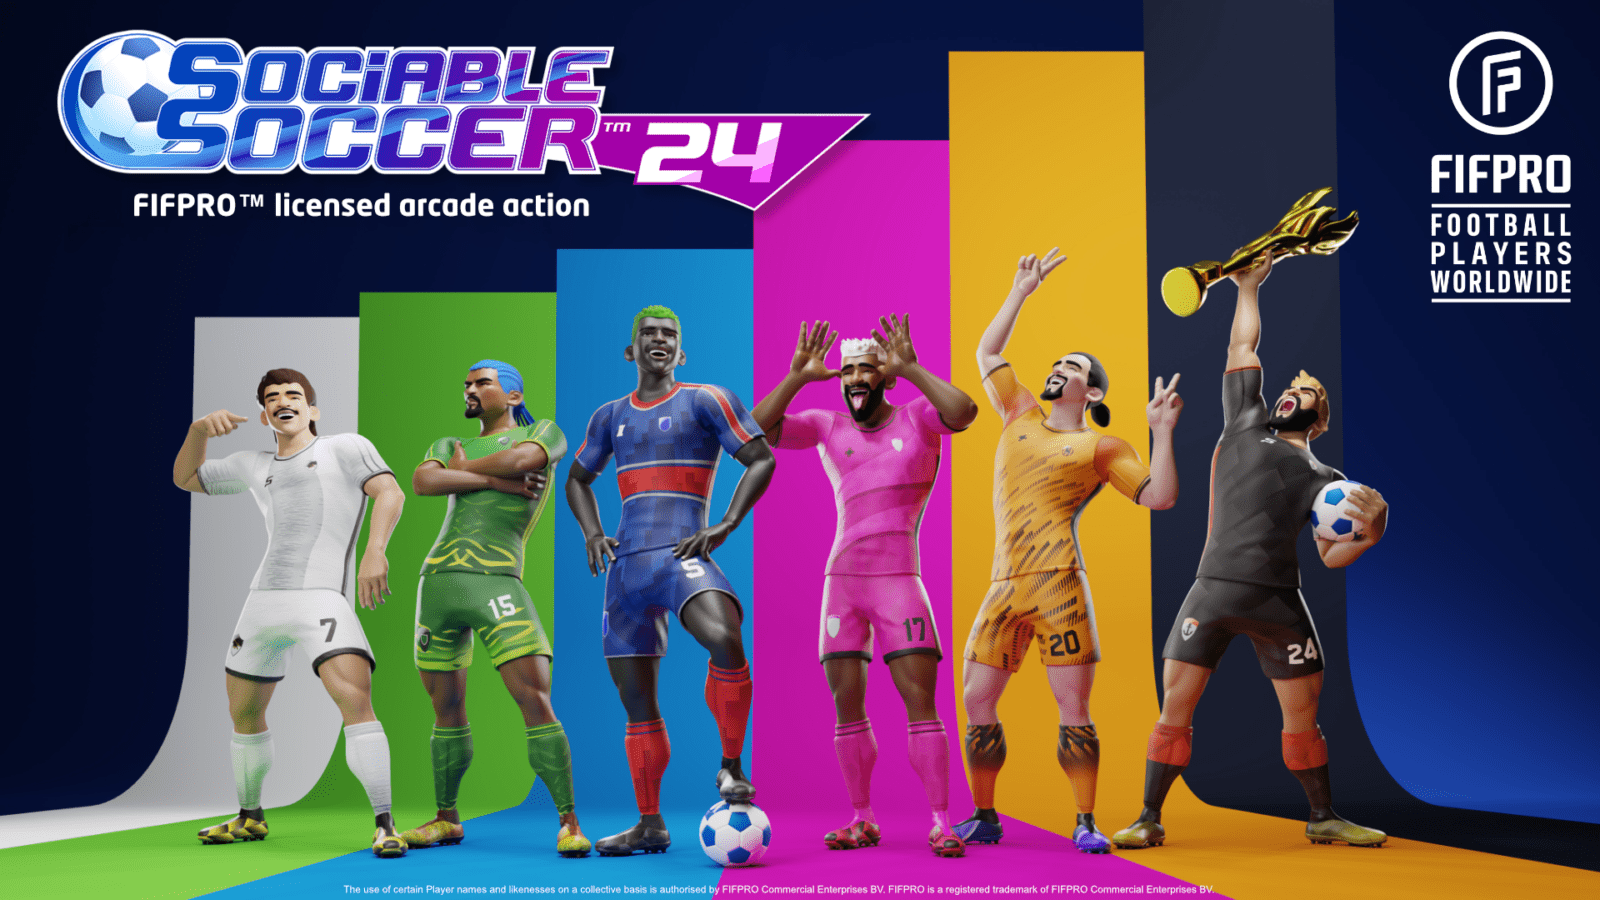 Sociable Soccer 24 é anunciado para Nintendo Switch